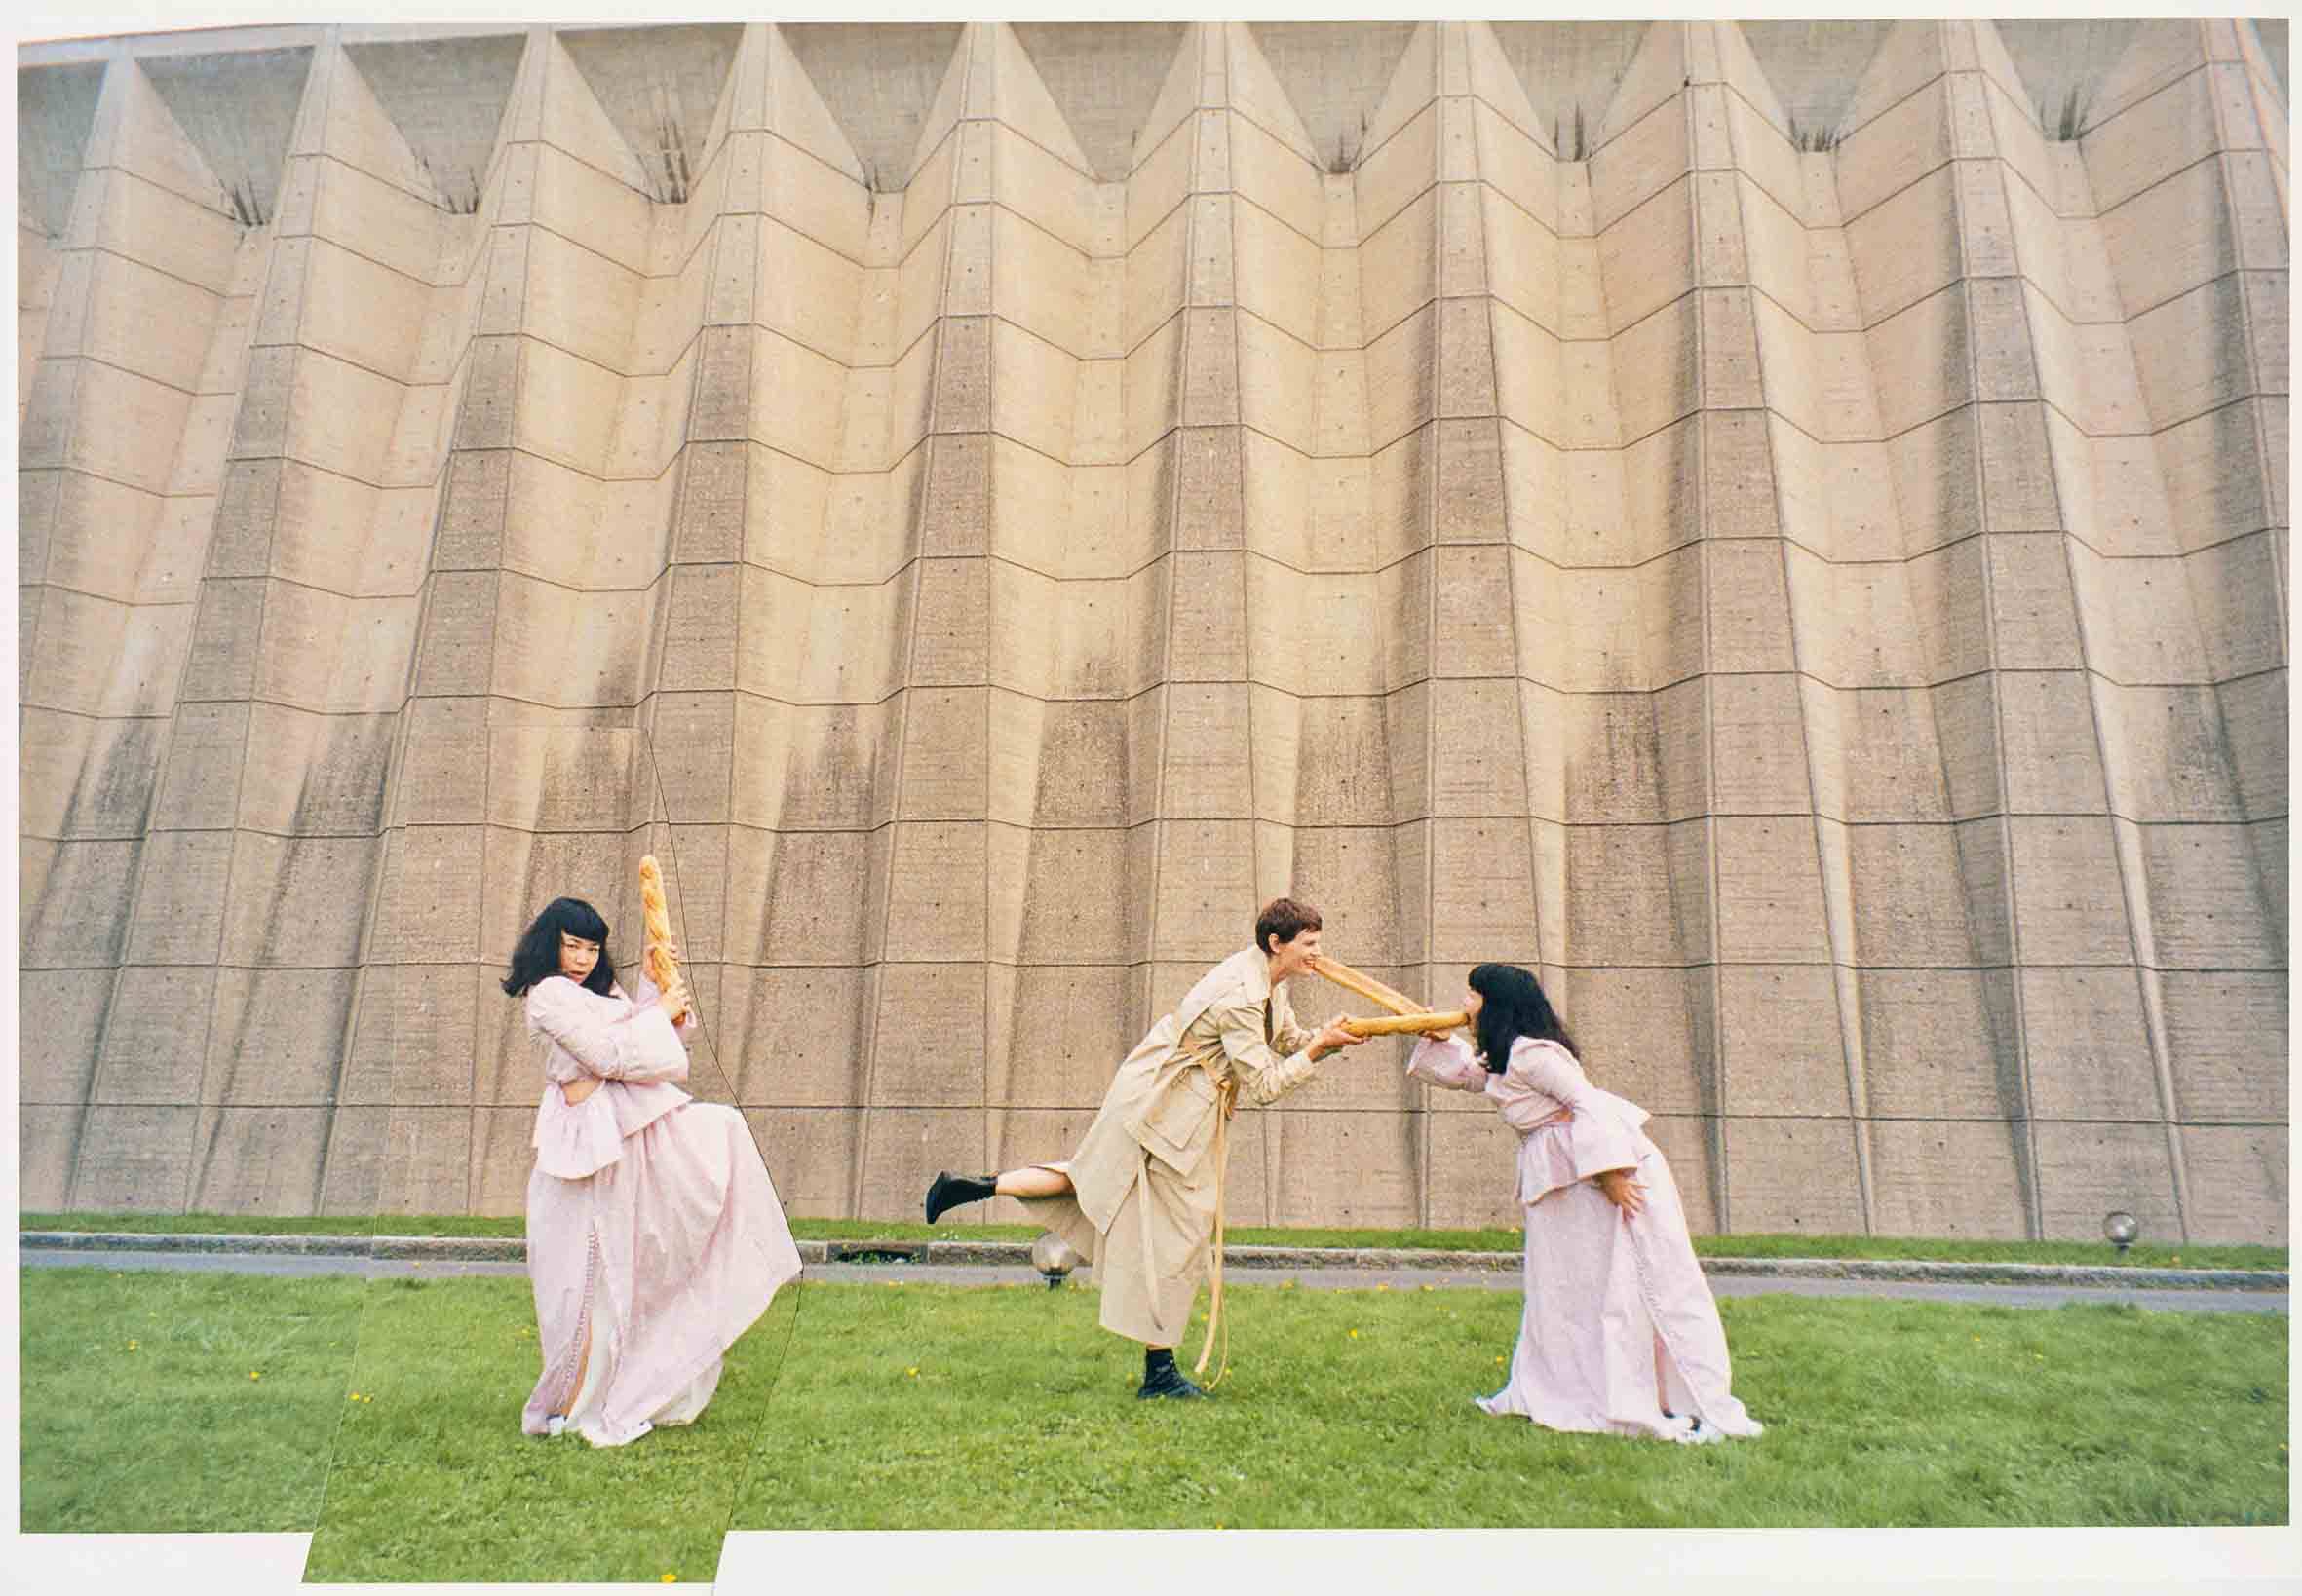 Qui est Fumiko Imano, la photographe qui a shooté Saskia de Brauw pour Loewe? 